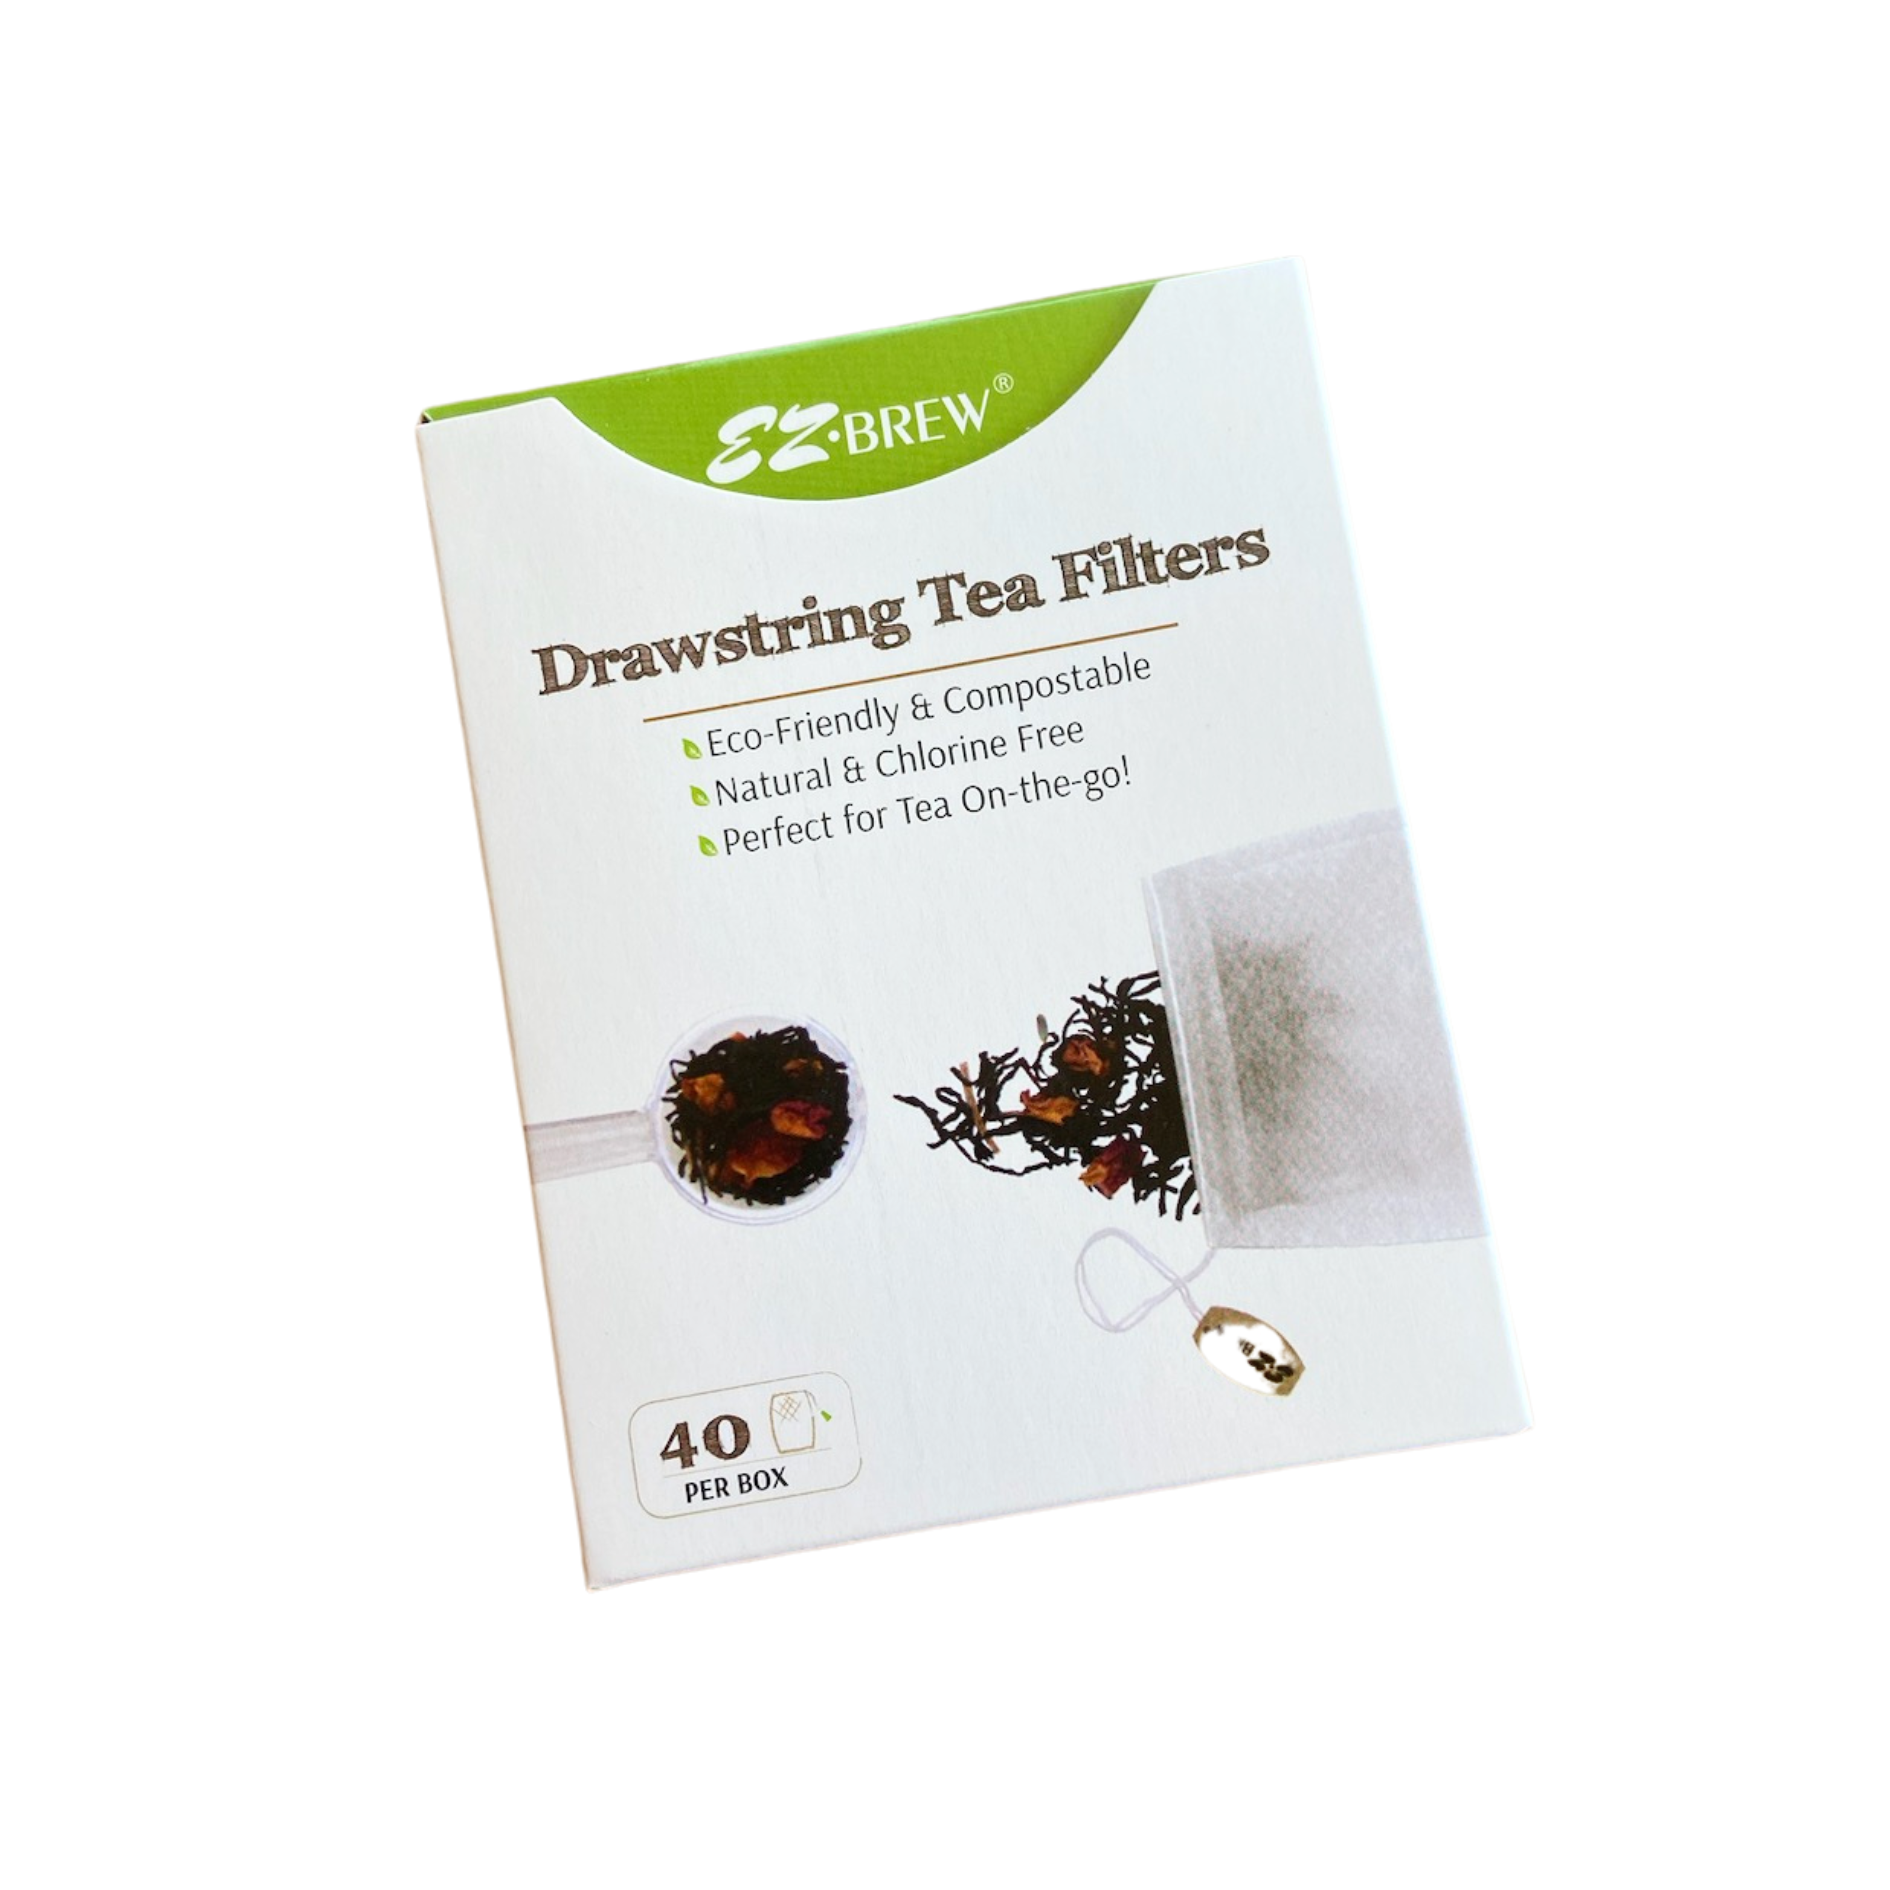 EZ-Brew Drawstring Tea Filters